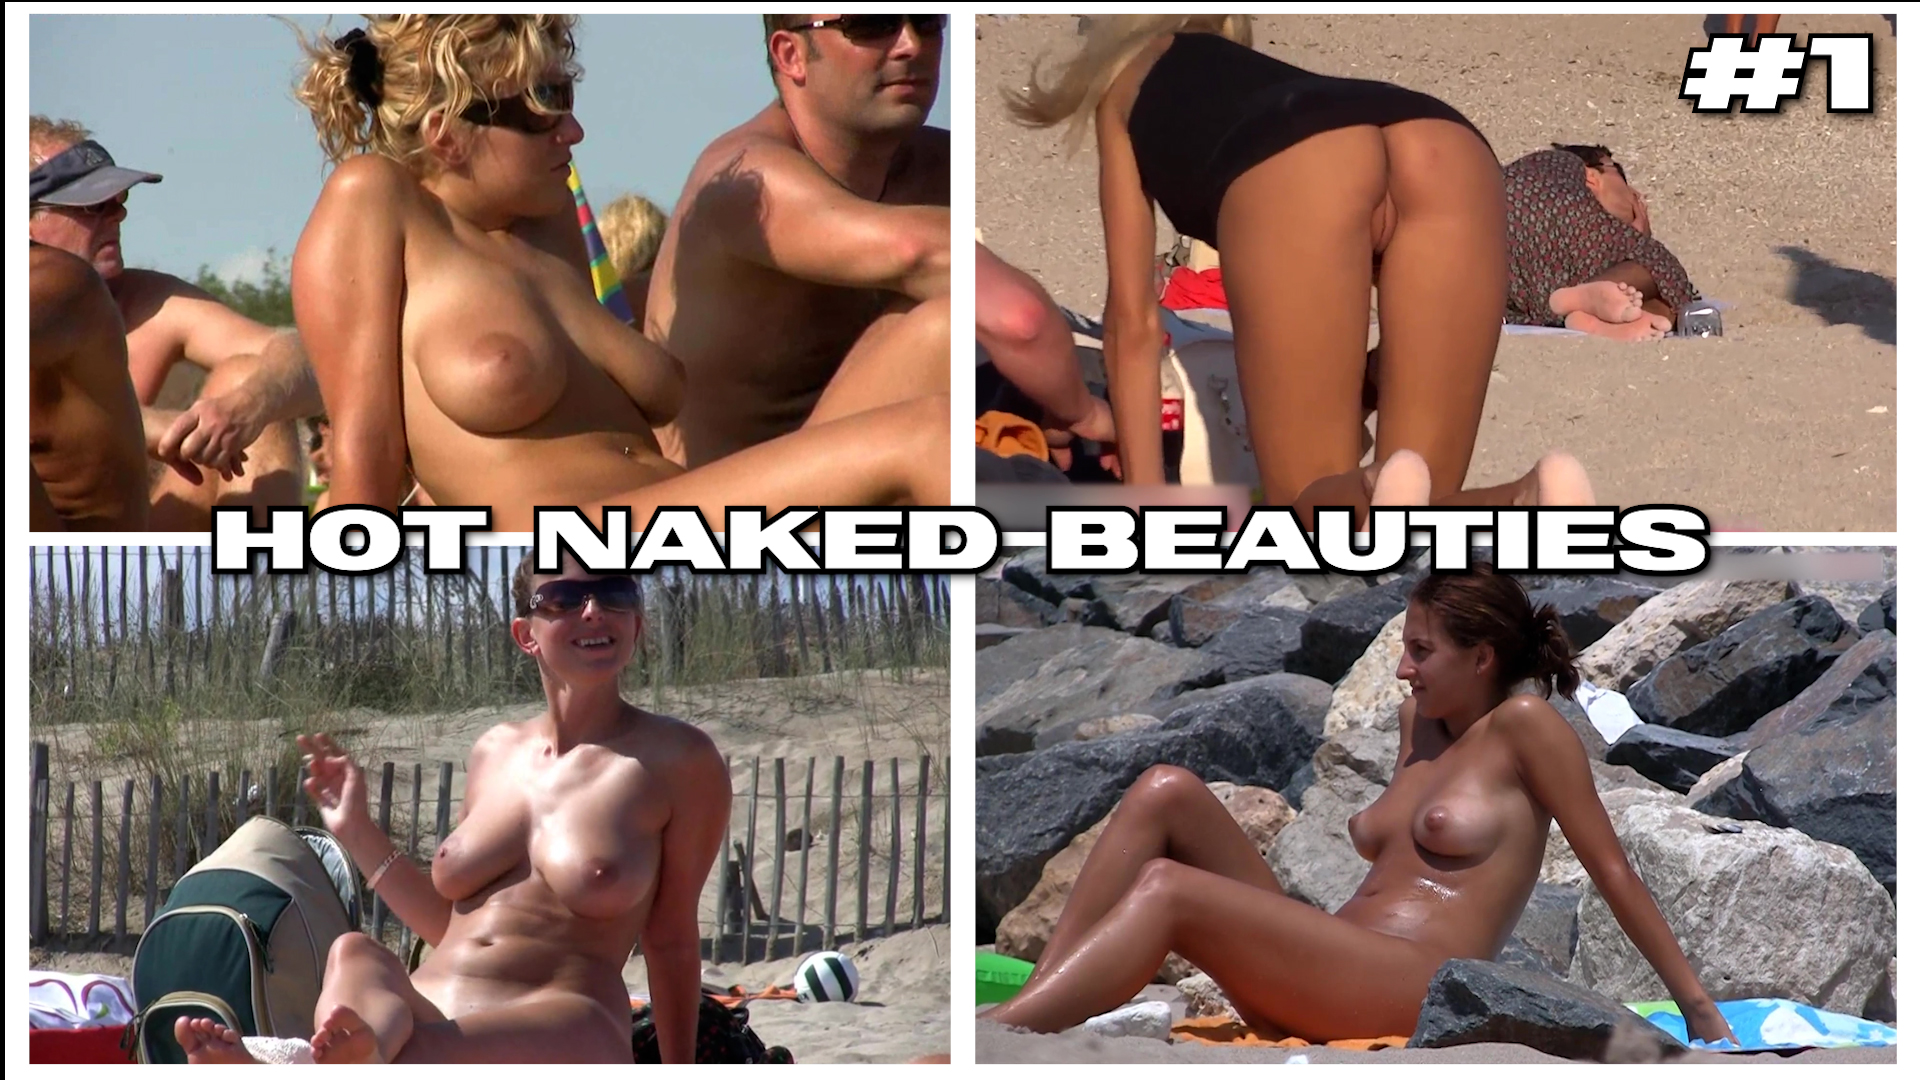 Beach voyeur - Hot naked beauties #1 - ThisVid.com